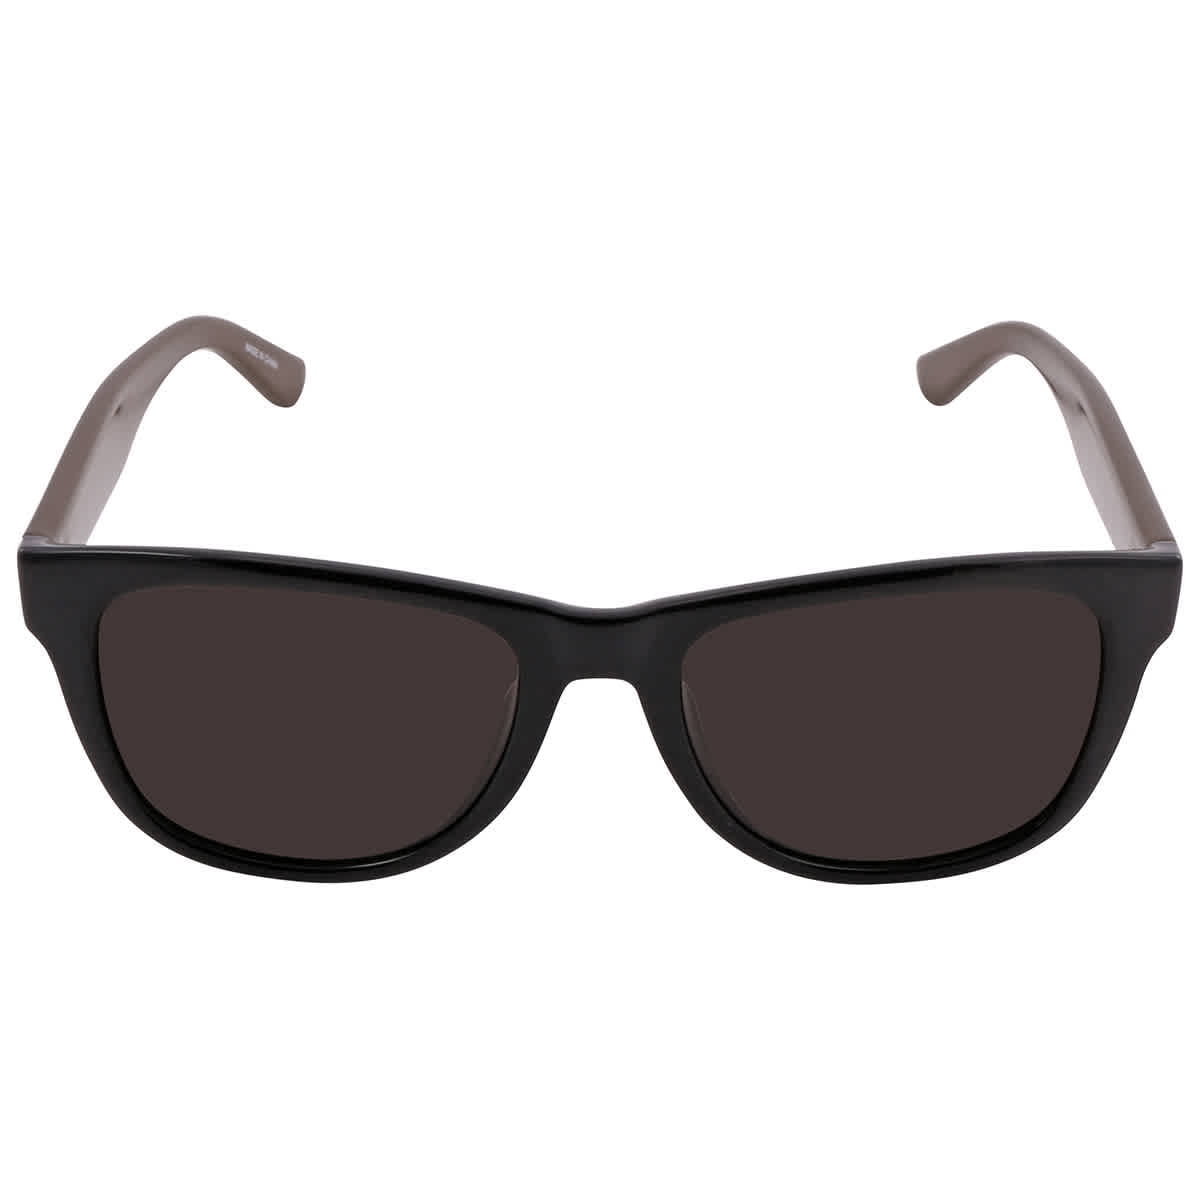 Lacoste Brown Square Sunglasses 001 52 Walmart.com